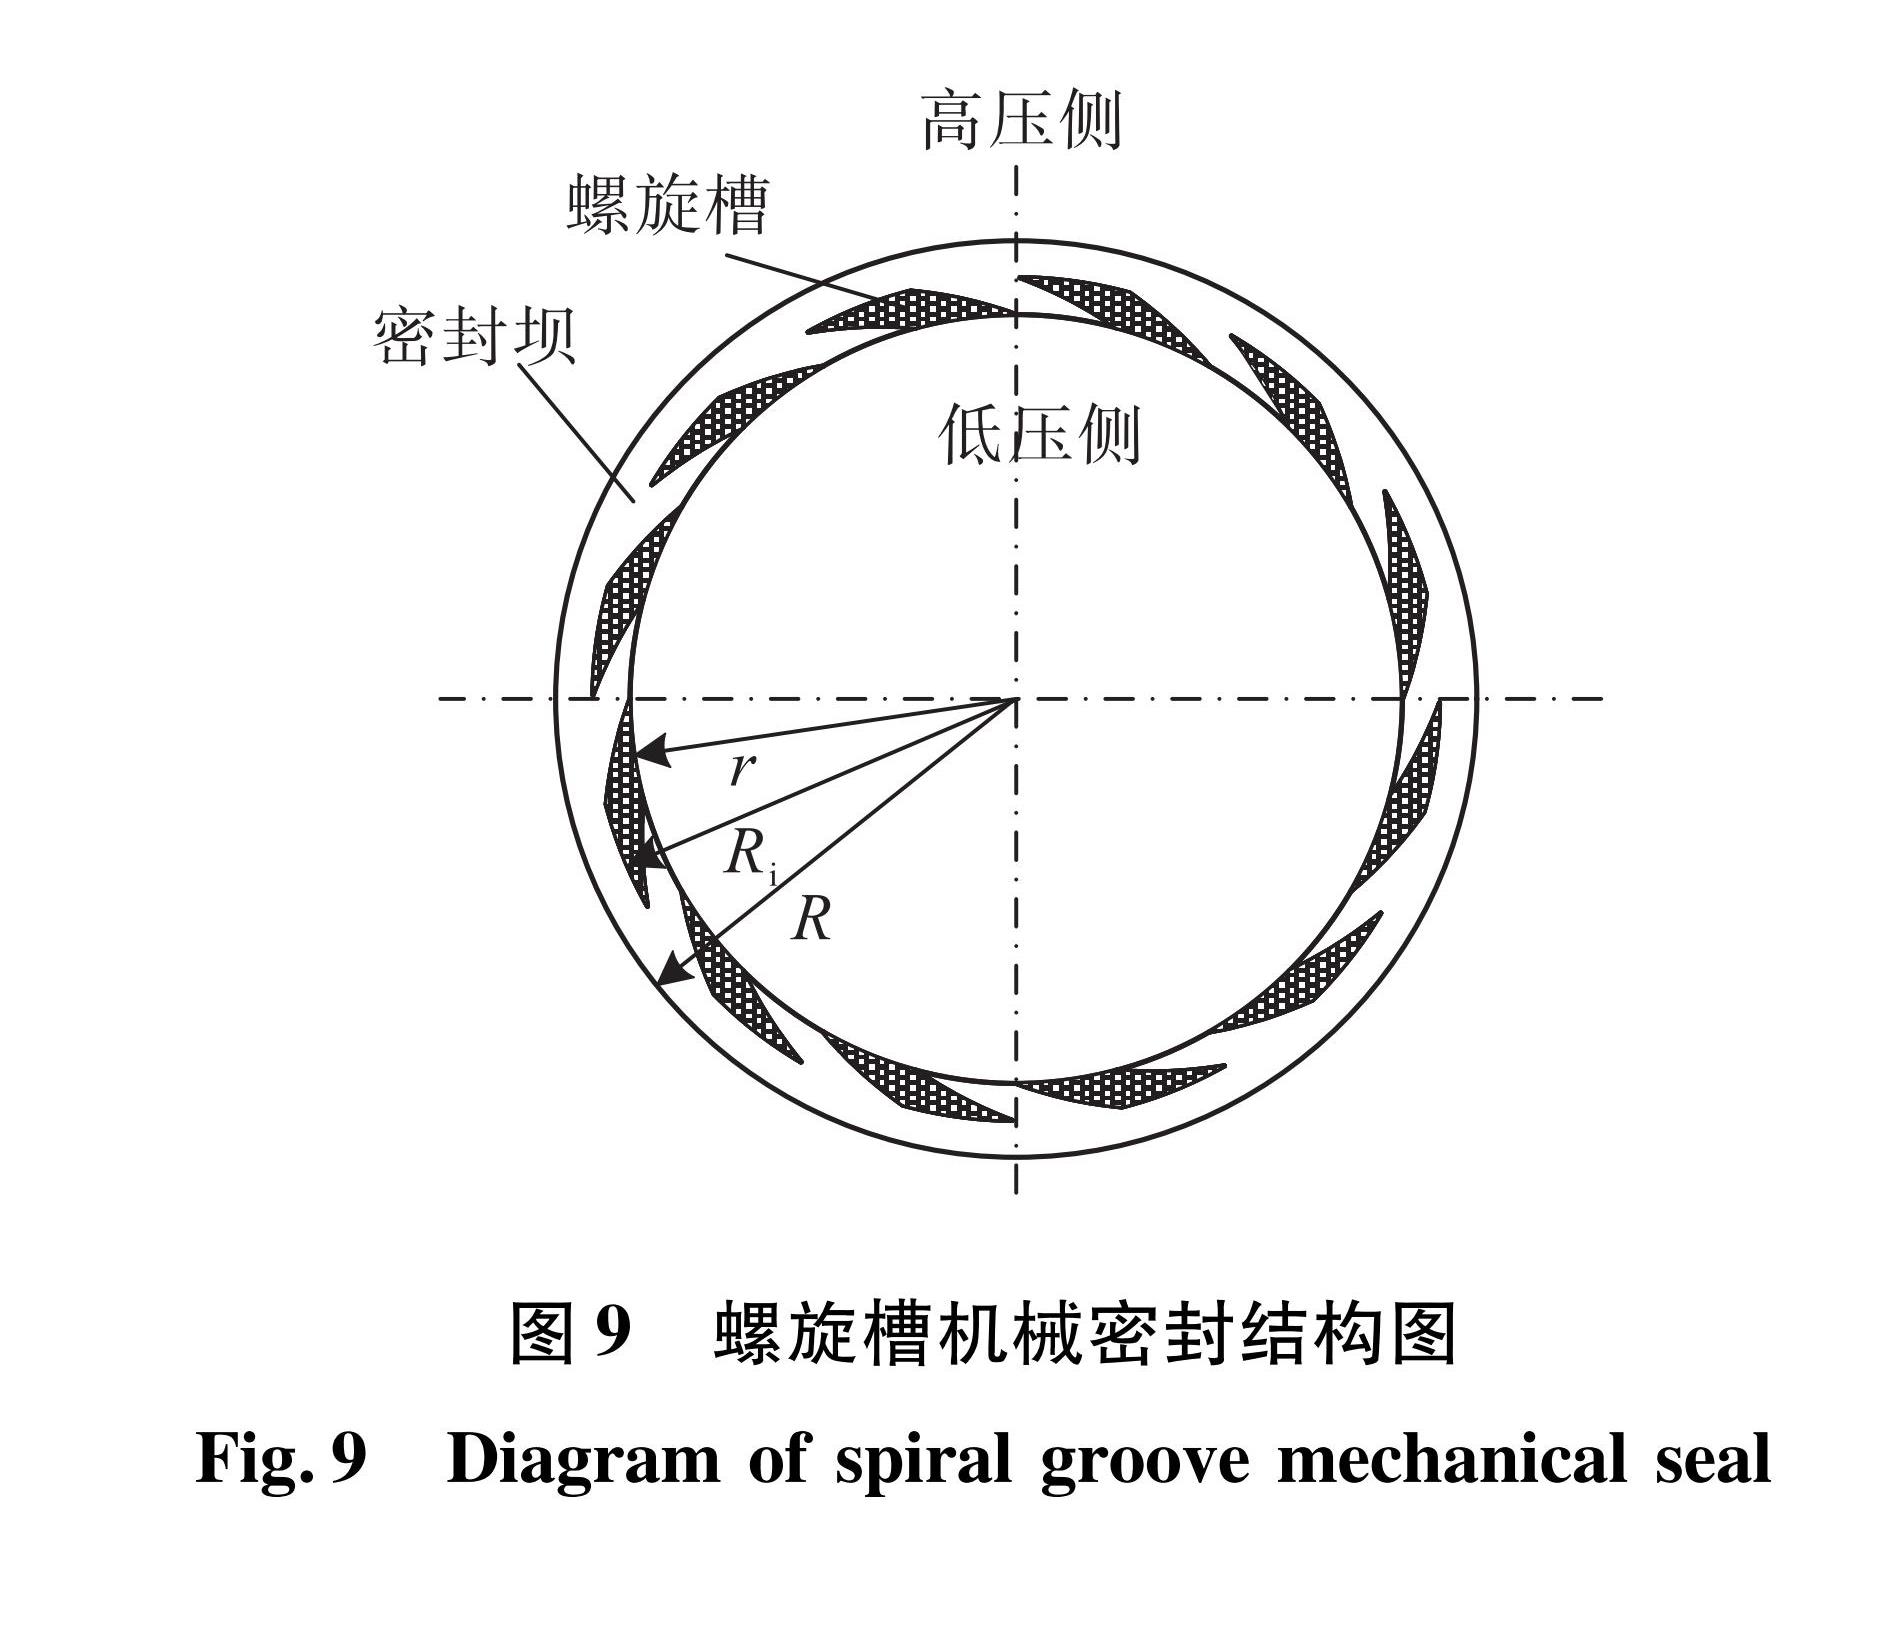 图9 螺旋槽机械密封结构图<br/>Fig.9 Diagram of spiral groove mechanical seal